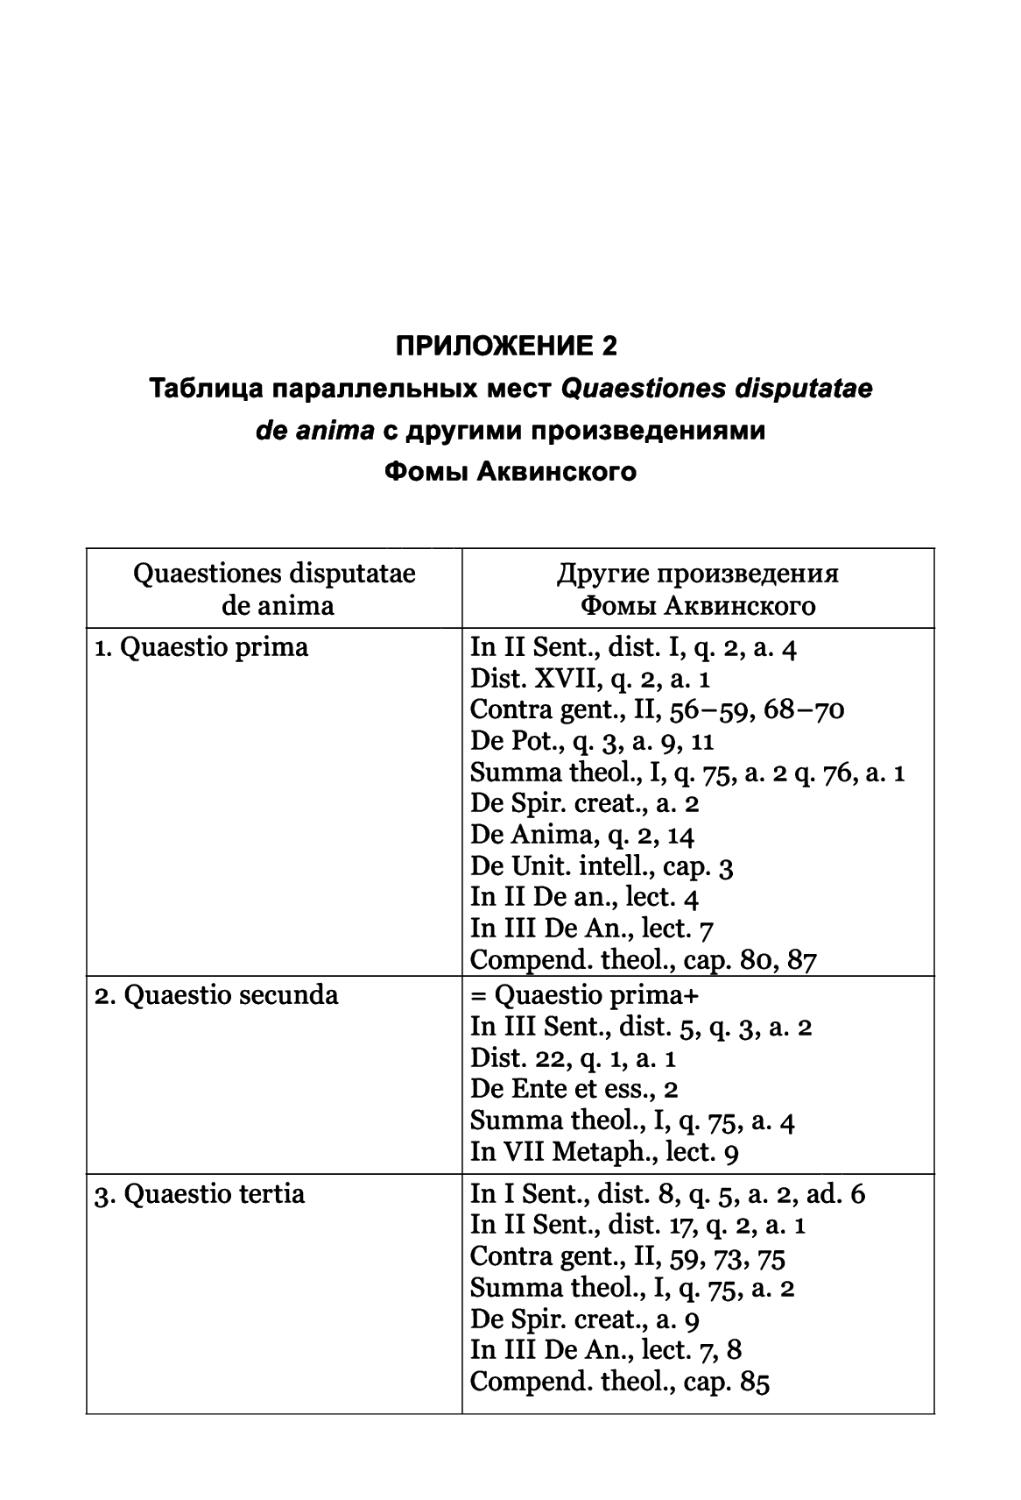 ПРИЛОЖЕНИЕ 2. Таблица параллельных мест Quaestiones disputatae de anima с другими произведениями Фомы Аквинского